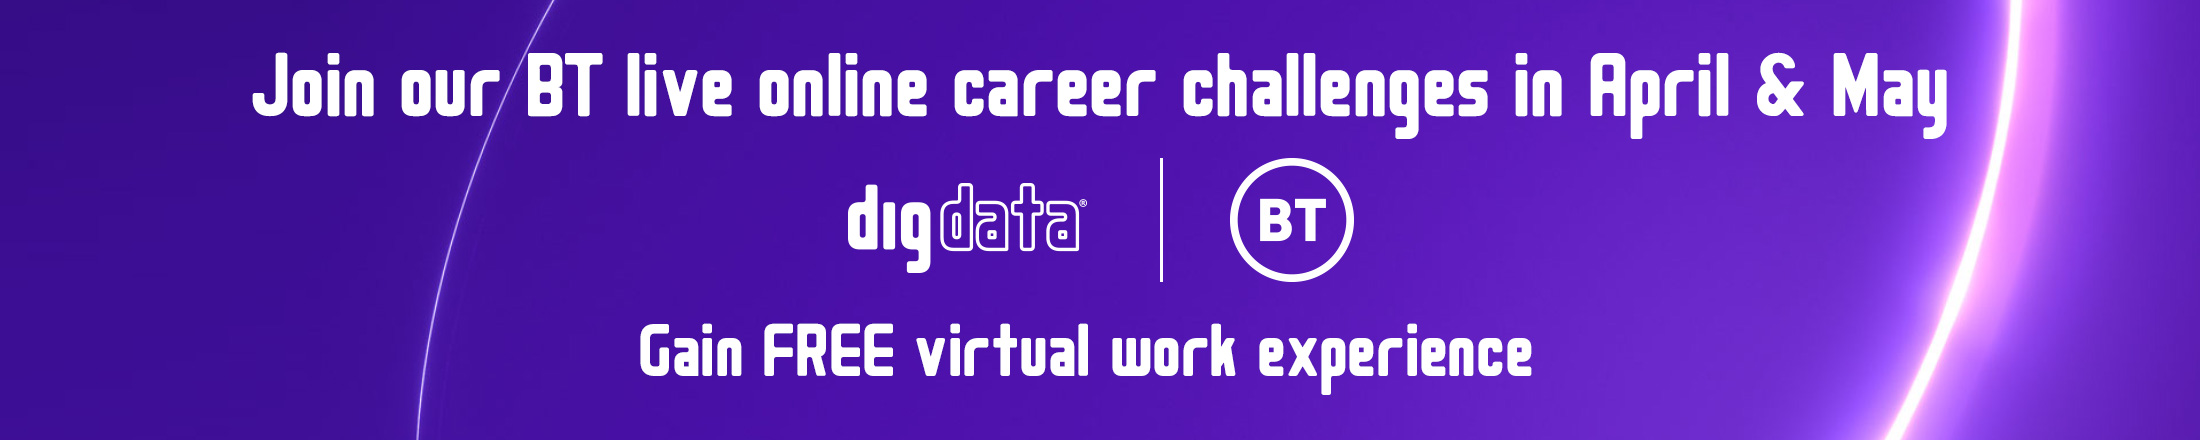 Digdata BT Career Challenge Banner